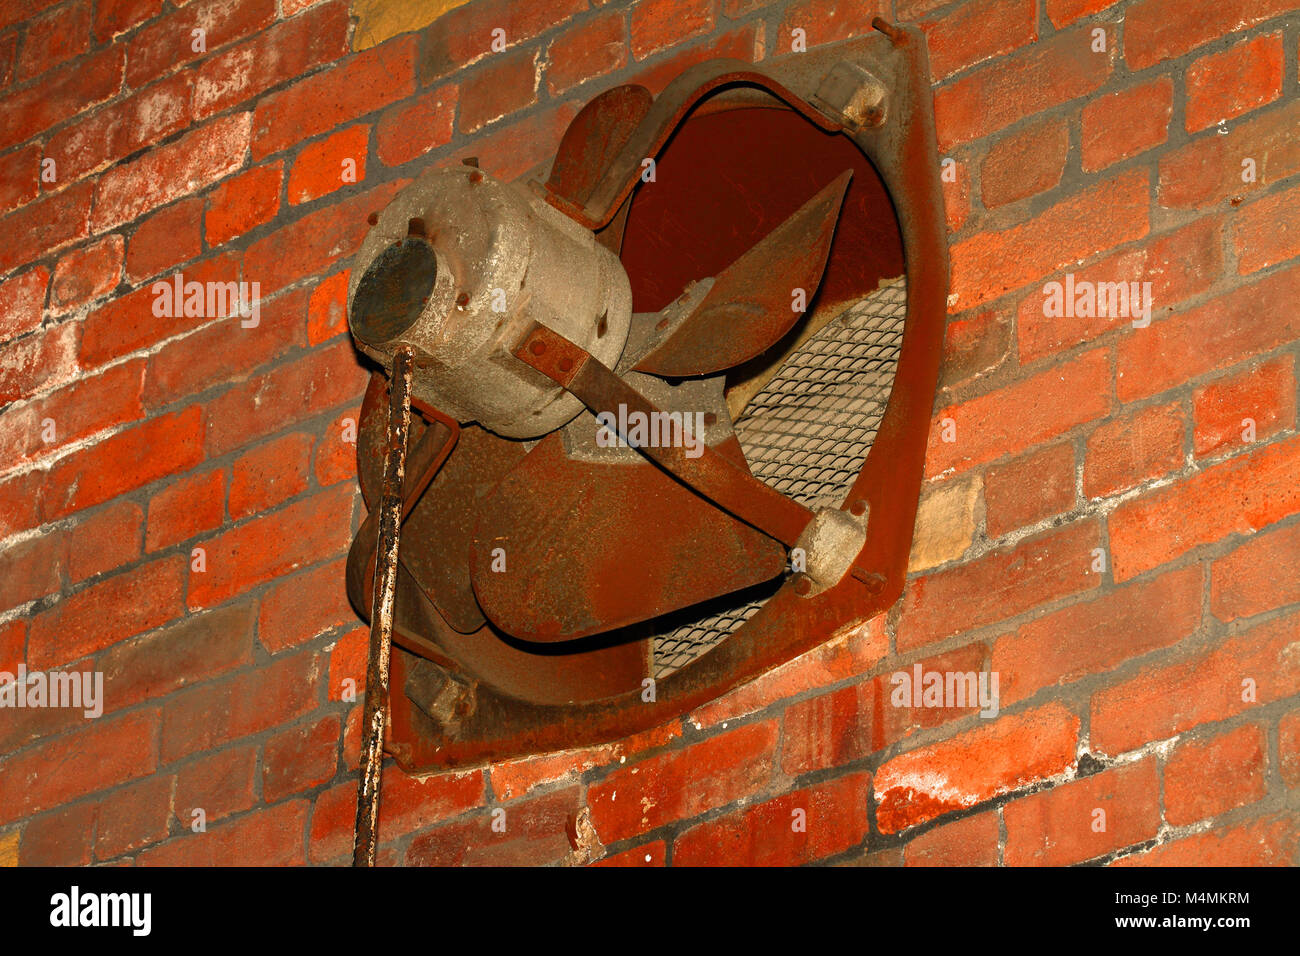 Old rusty metal factory fan situé dans un mur Banque D'Images